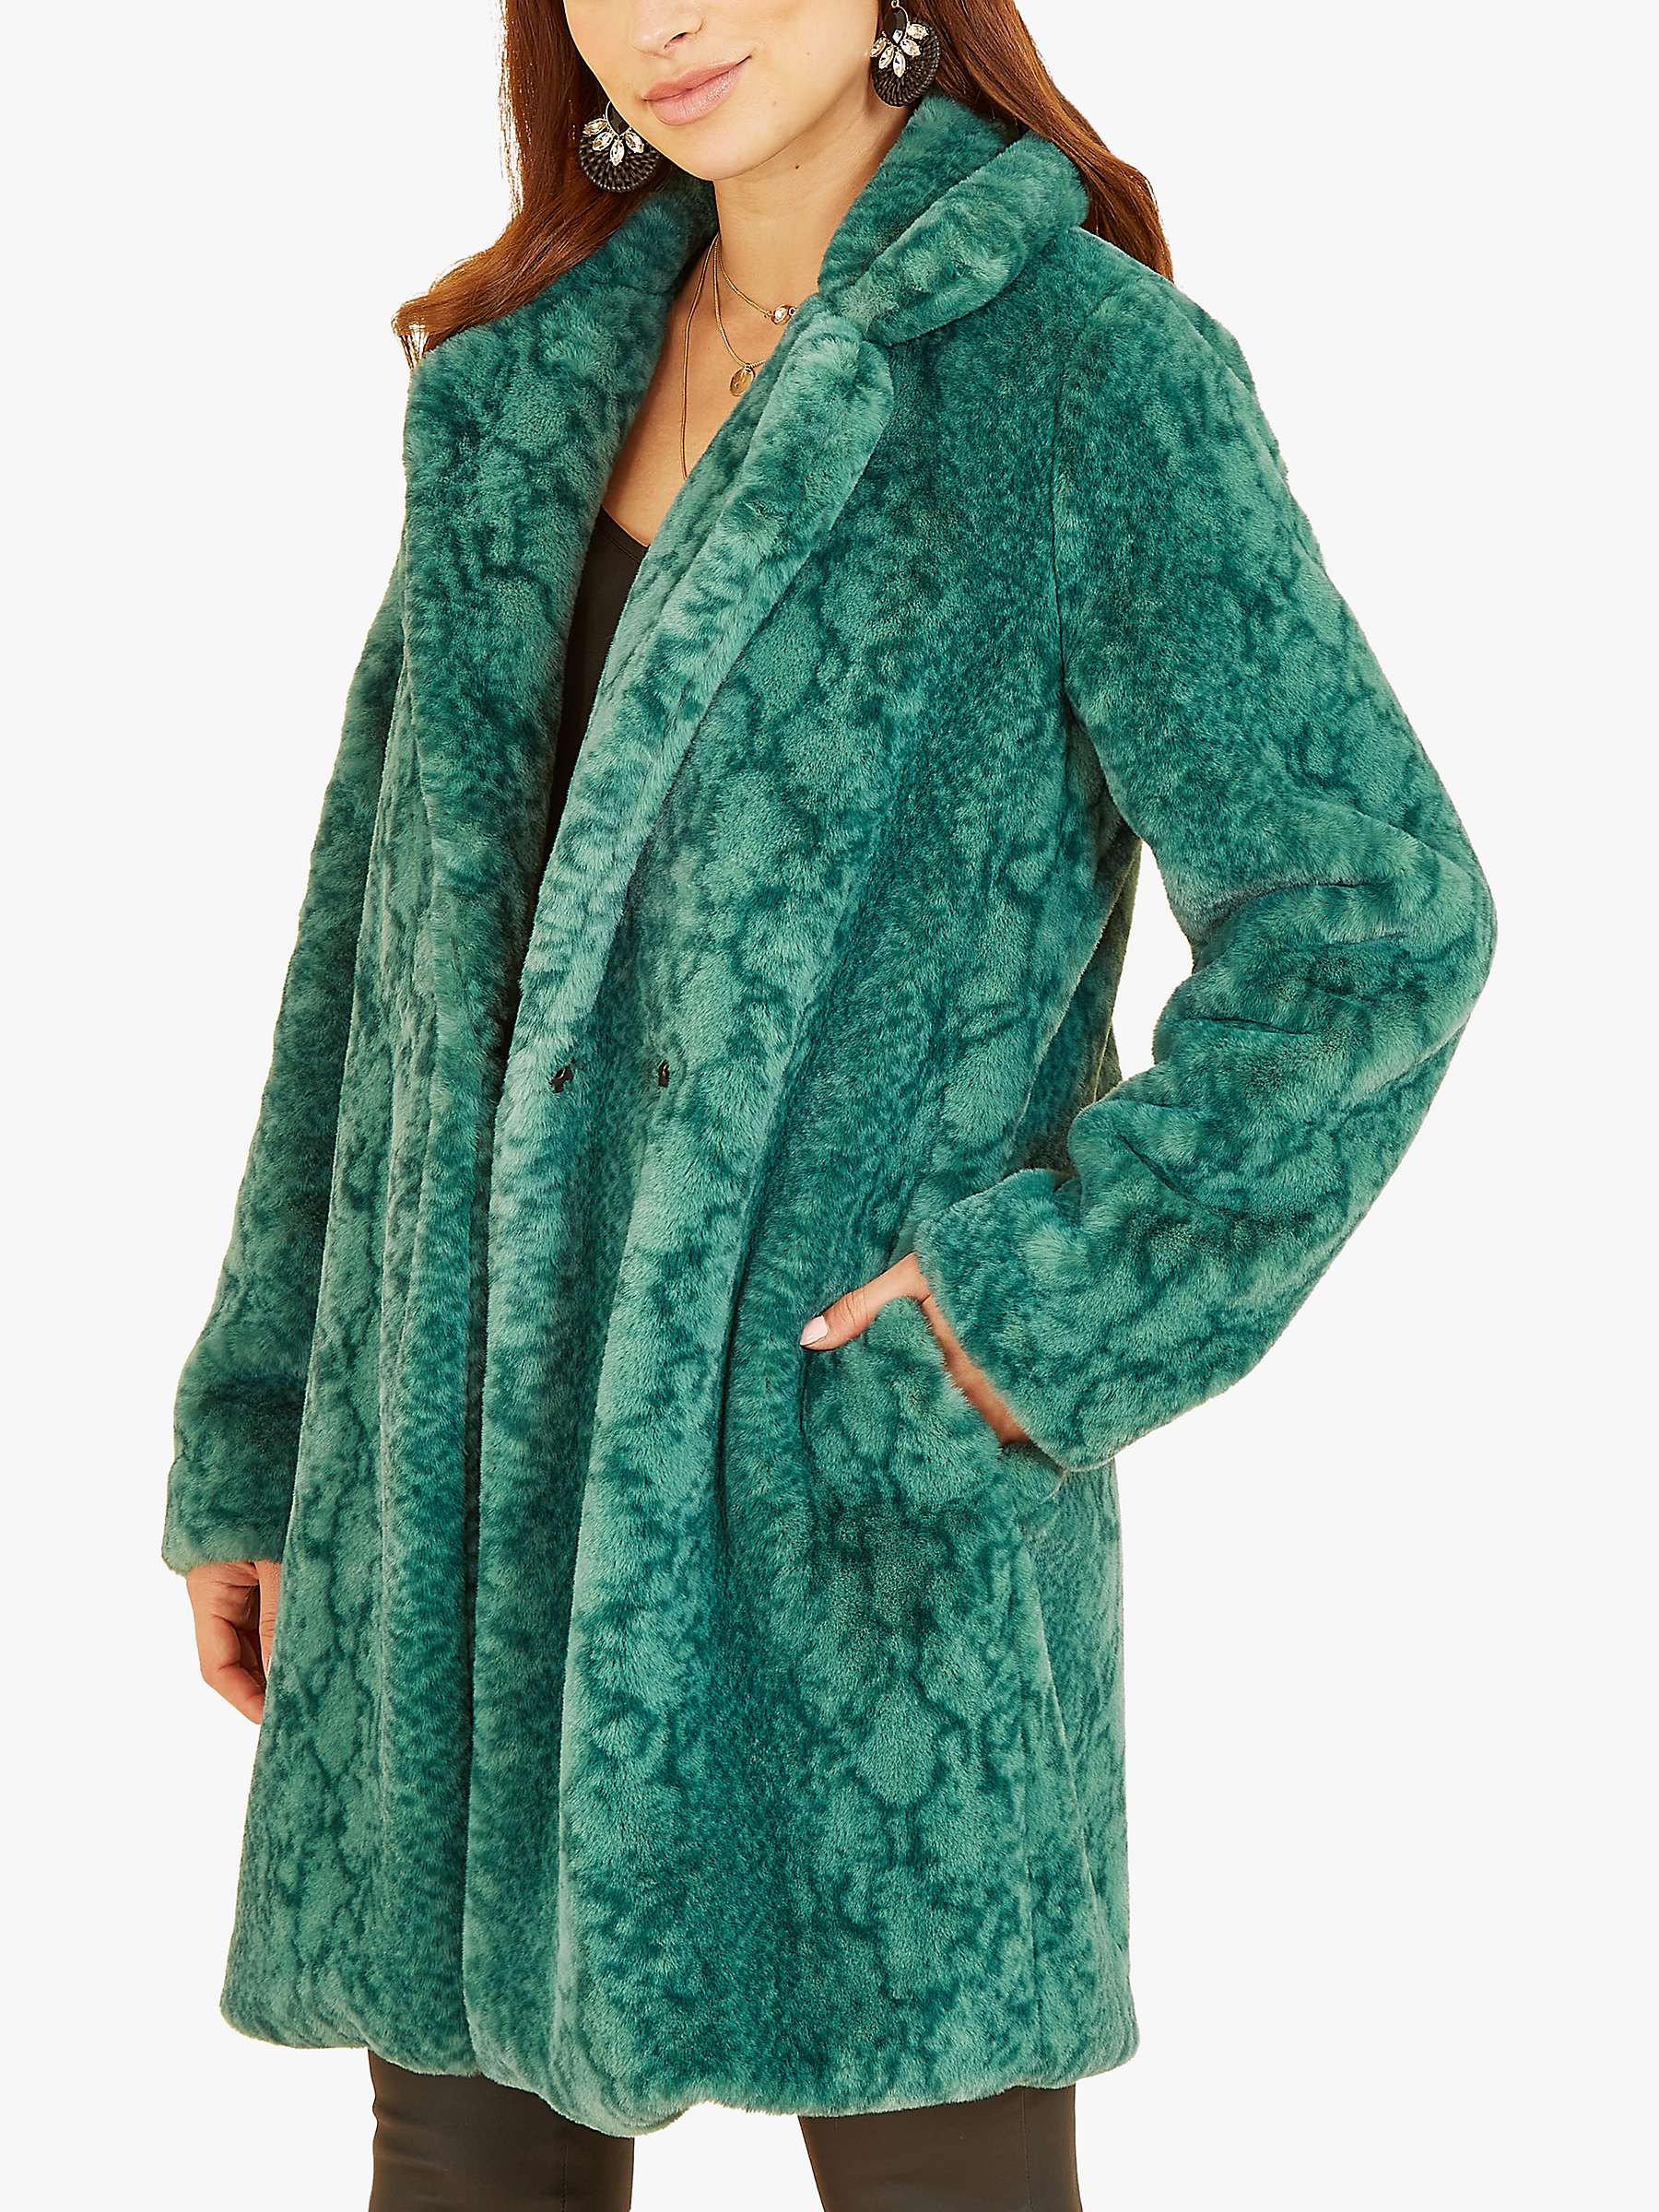 Buy Yumi Snakeskin Print Faux Fur Coat Online at johnlewis.com